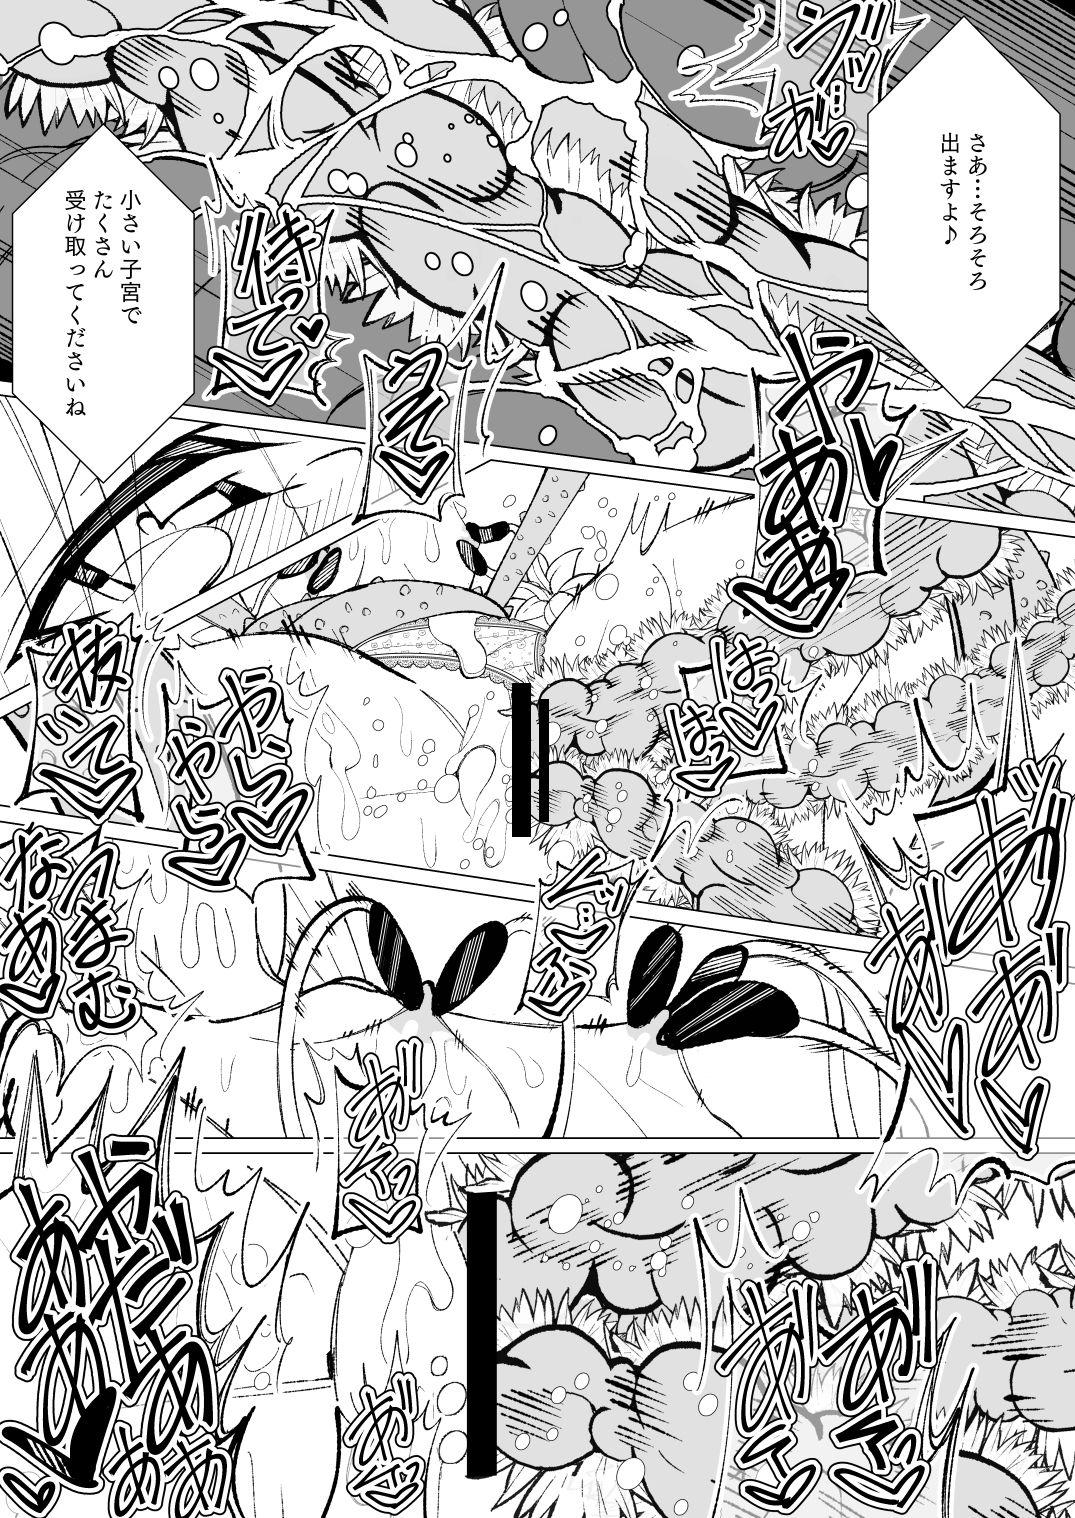 Ishu kan fūzoku-gai3 shokubutsu shokushu × rori 37